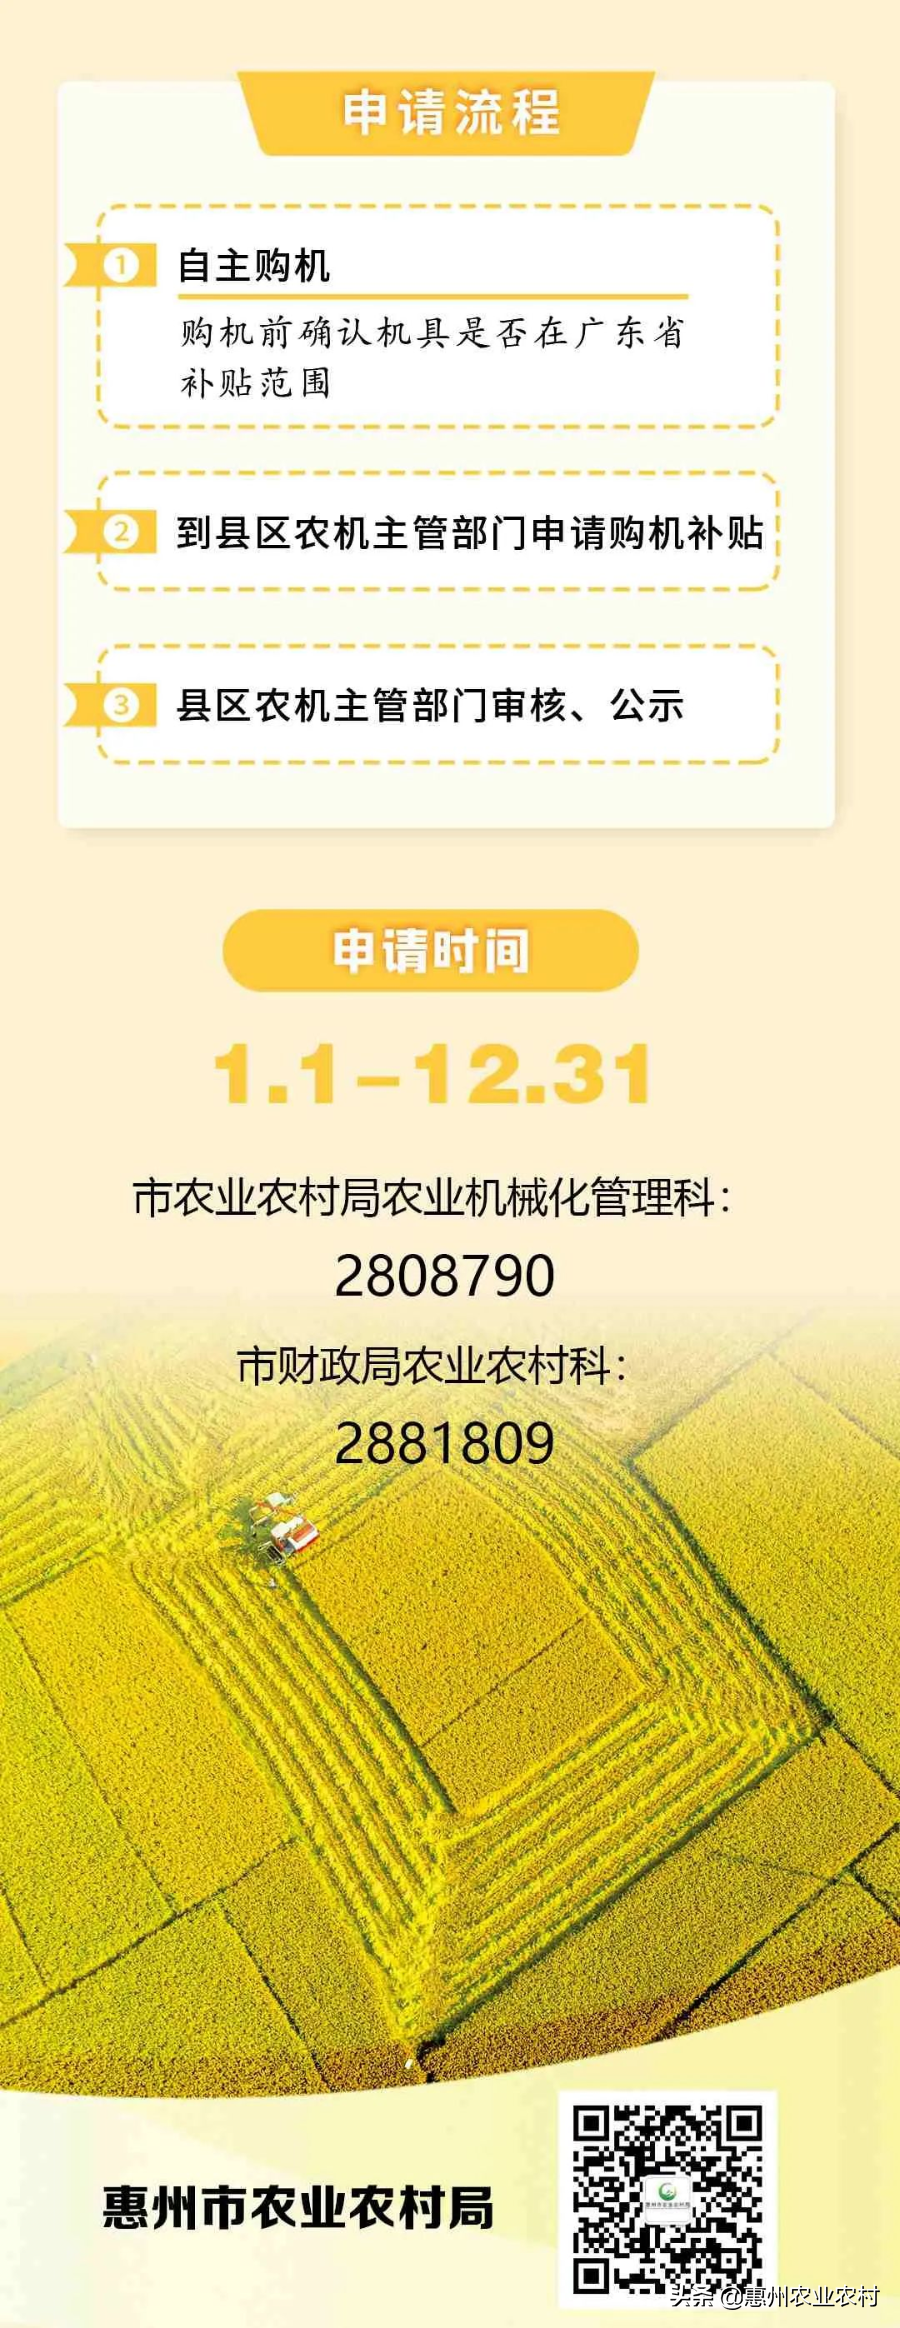 @惠州农业企业 中央财政农机购置补贴这样申请补助